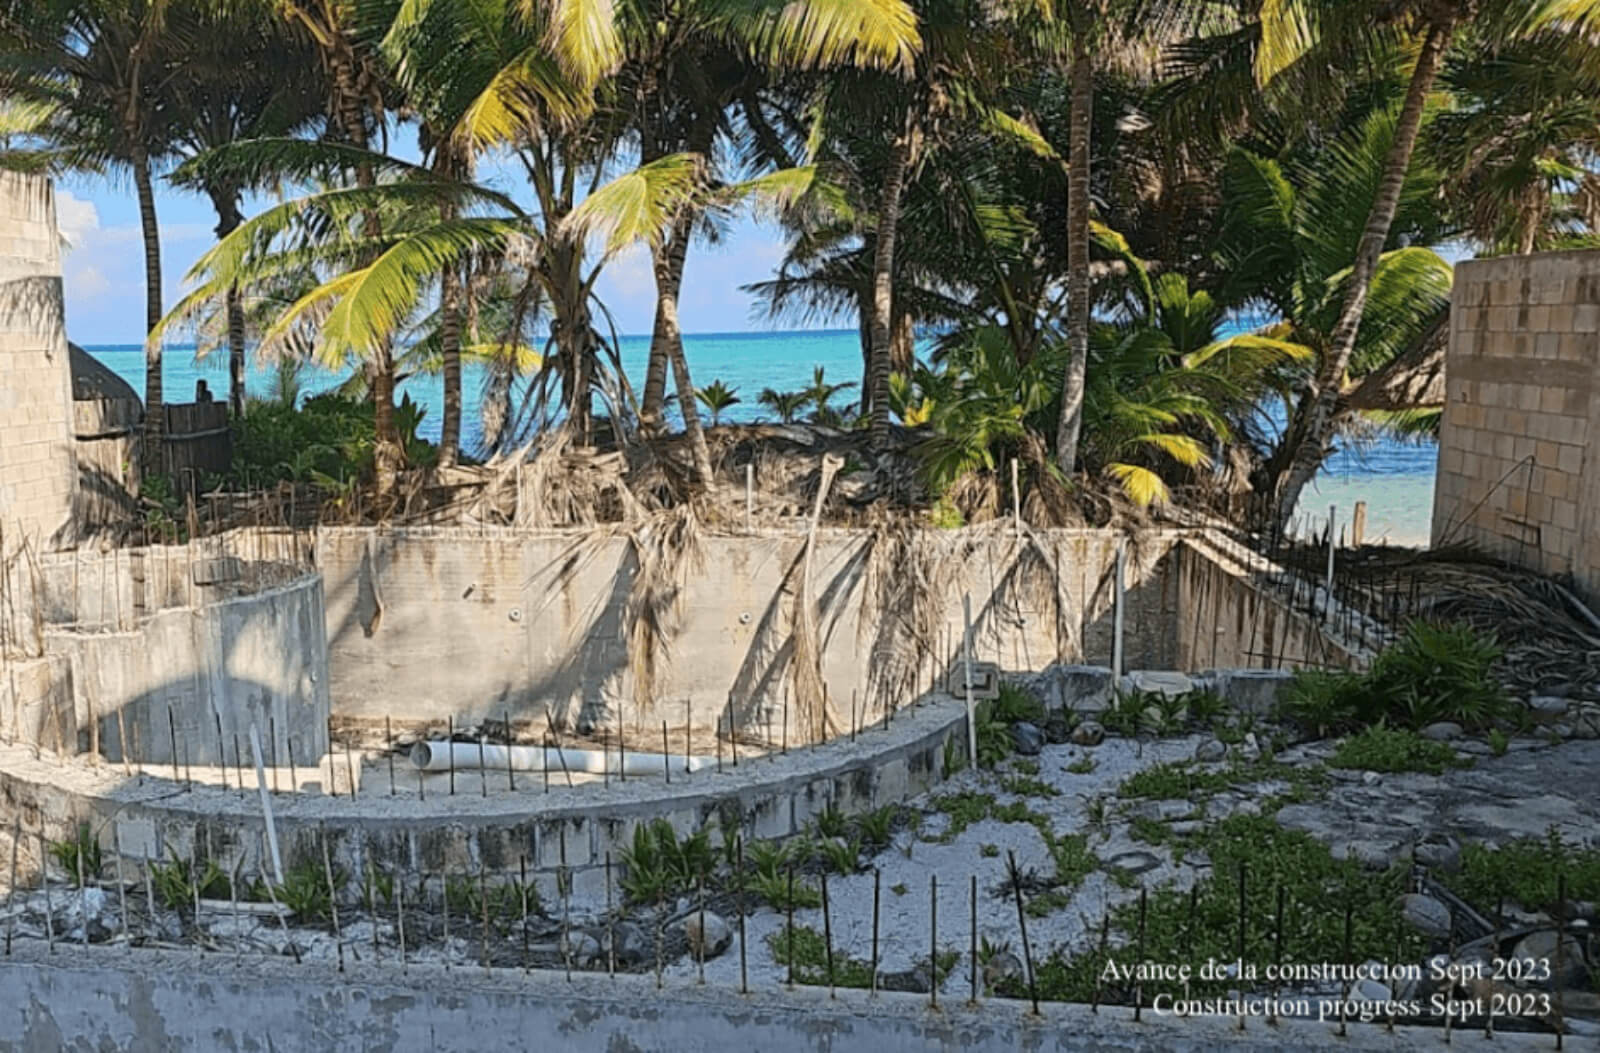 Departamento con terraza común con vista al mar, area de asador y alberca, acceso a la playa, pre-construccion, venta Bahia Tankah Tulum.